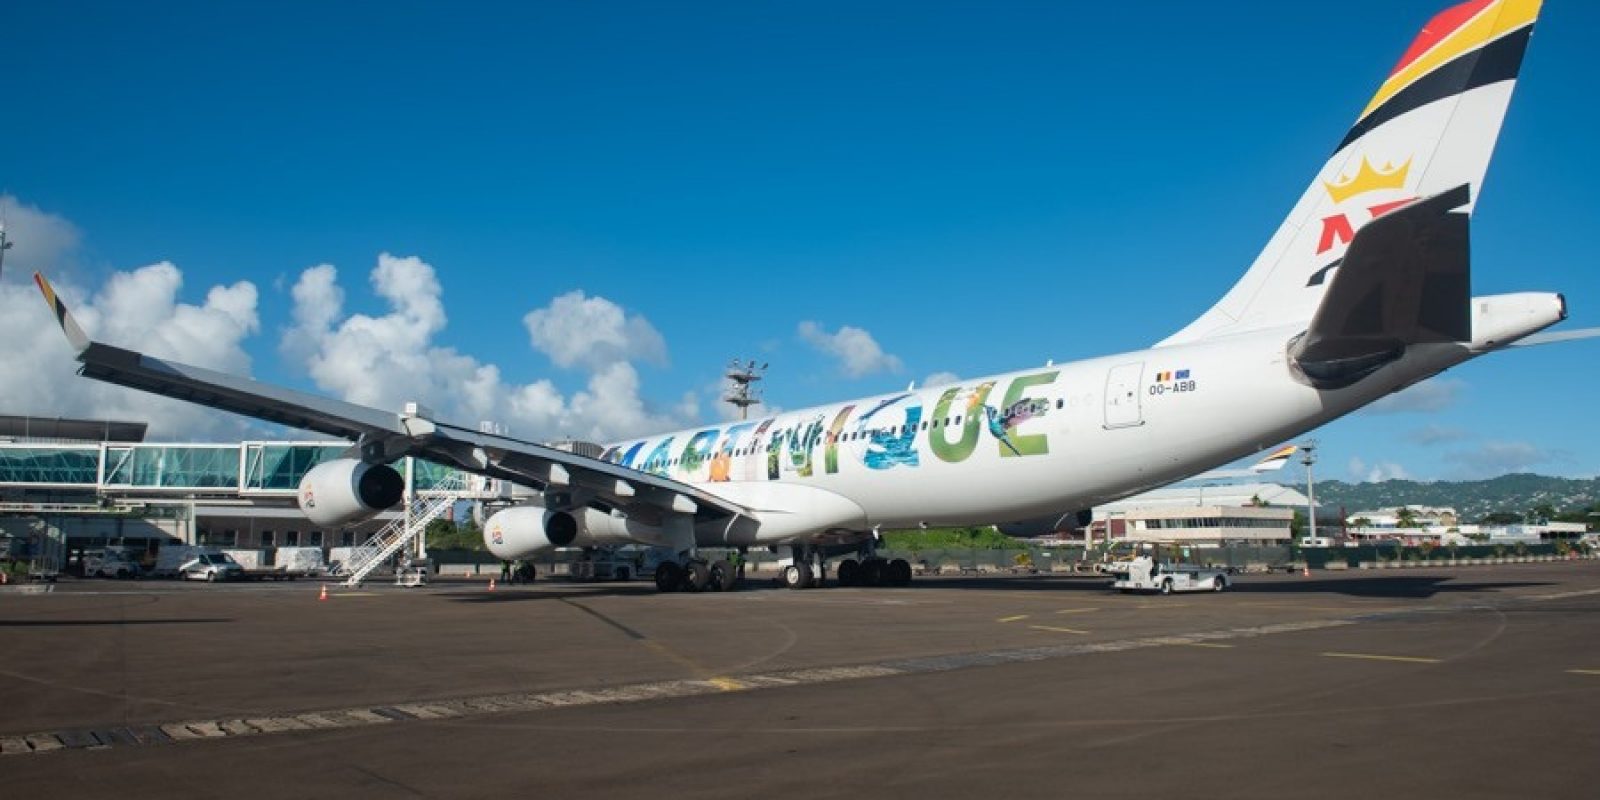 Le OO-ABB à l'aéroport international Martinique Aimé Césaire (FDF) anciennement appelé aéroport du Lamentin. (Photo Comité Martiniquais du Tourisme)